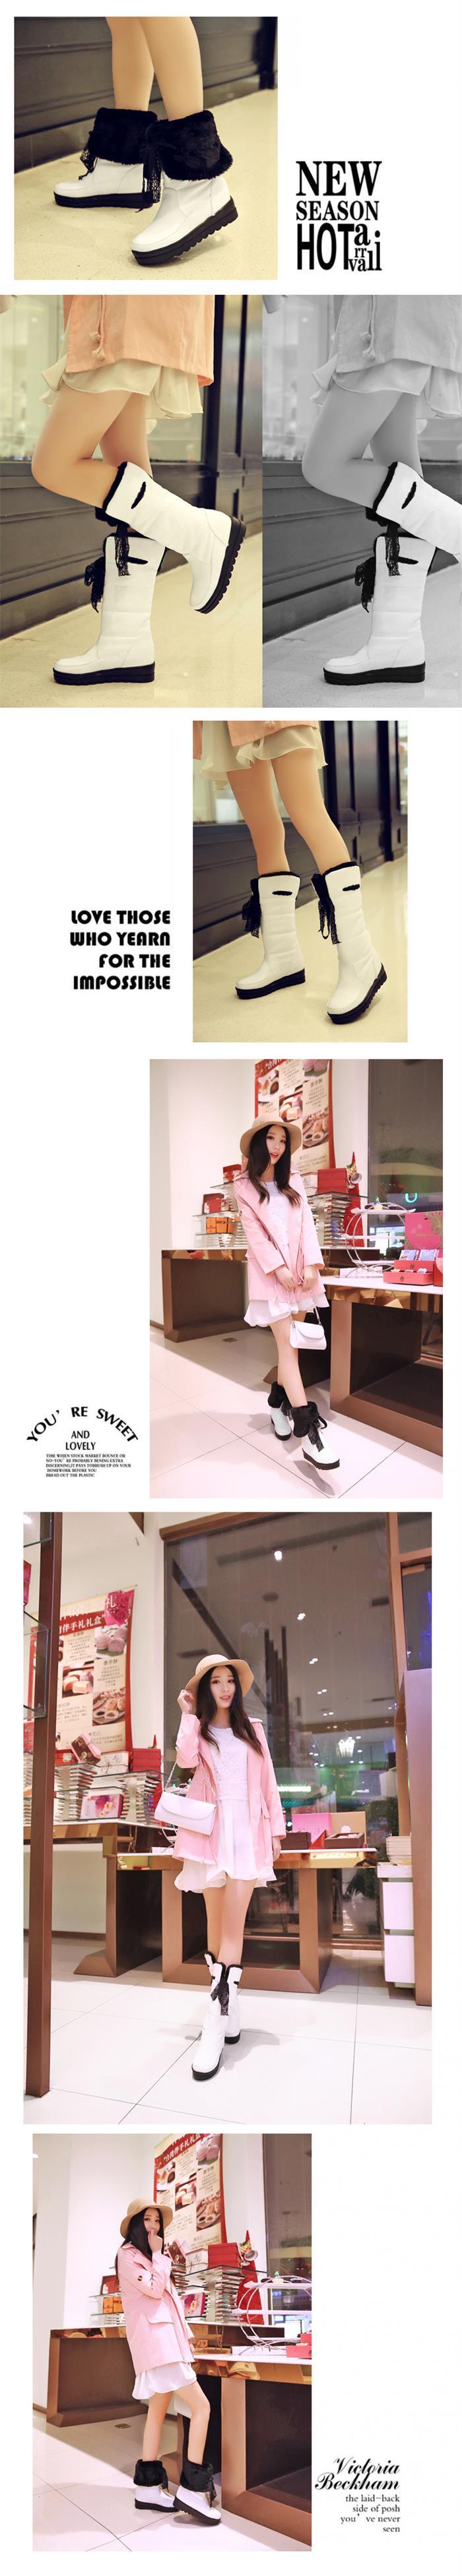 2016冬季新款韩版学生中筒靴子女圆头中跟内增高套筒女生雪地靴子